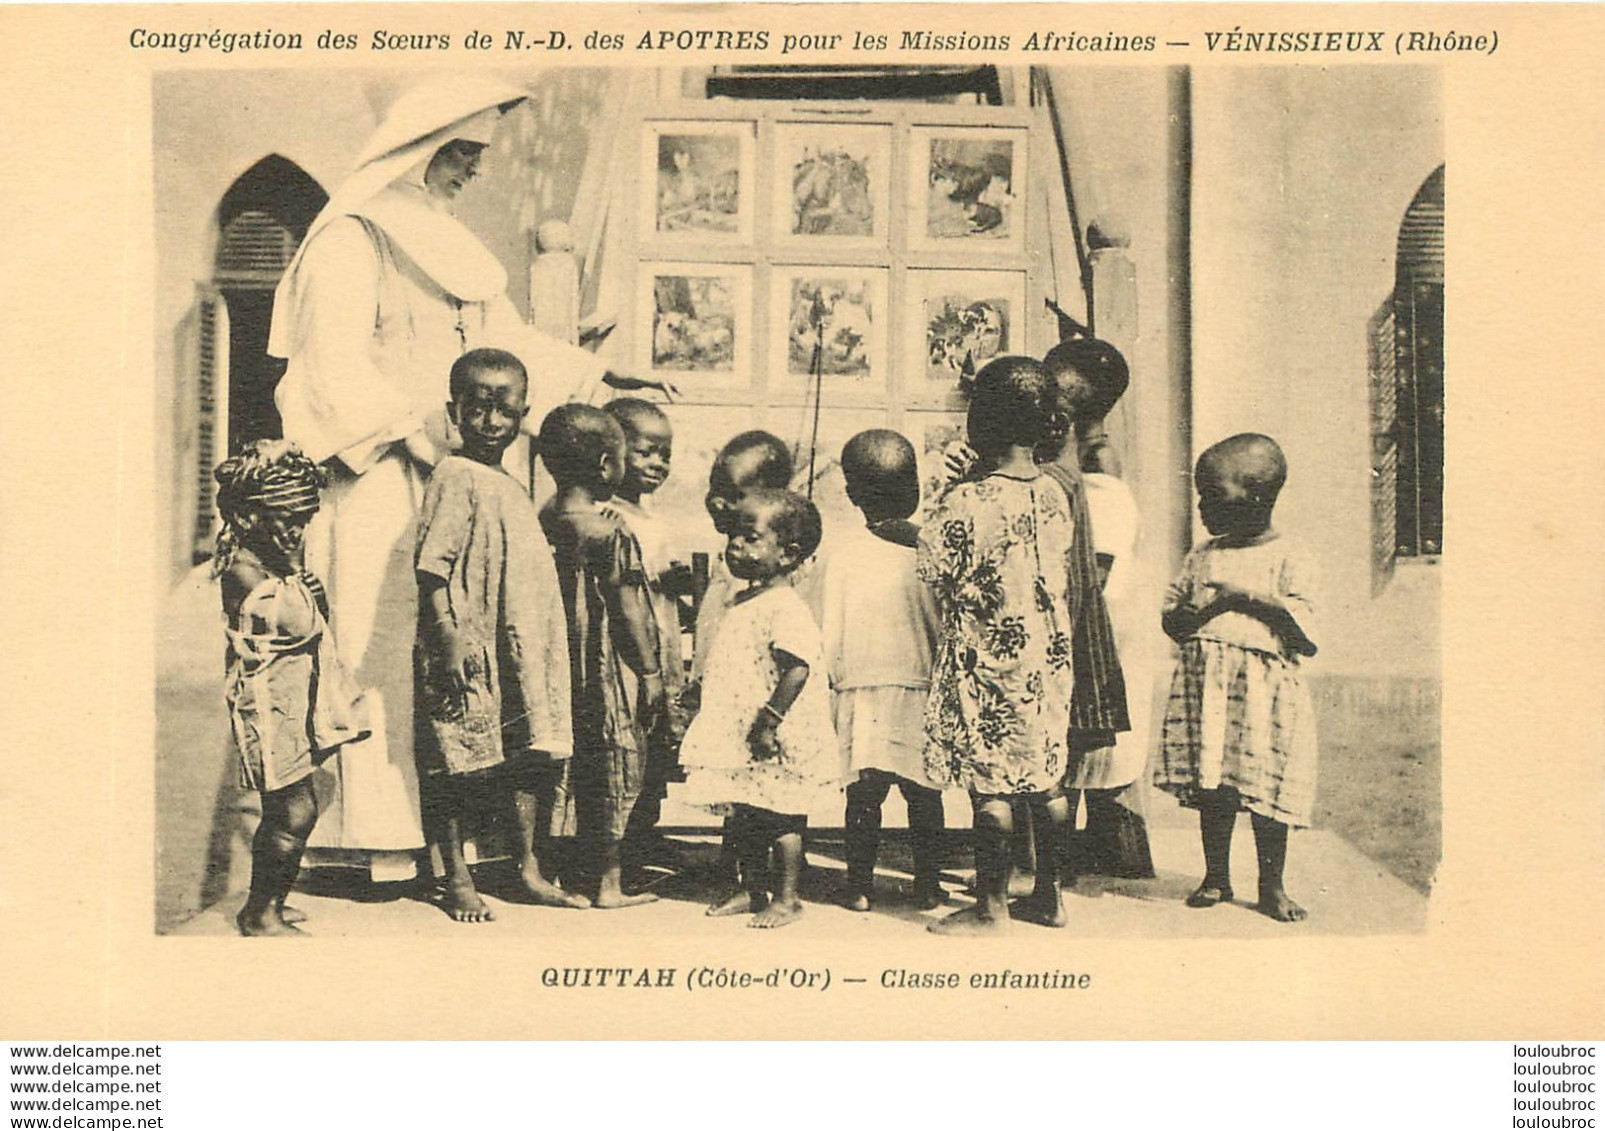 QUITTAH COTE D'OR ANGLAISE CLASSE ENFANTINE A VENISSIEUX - Togo